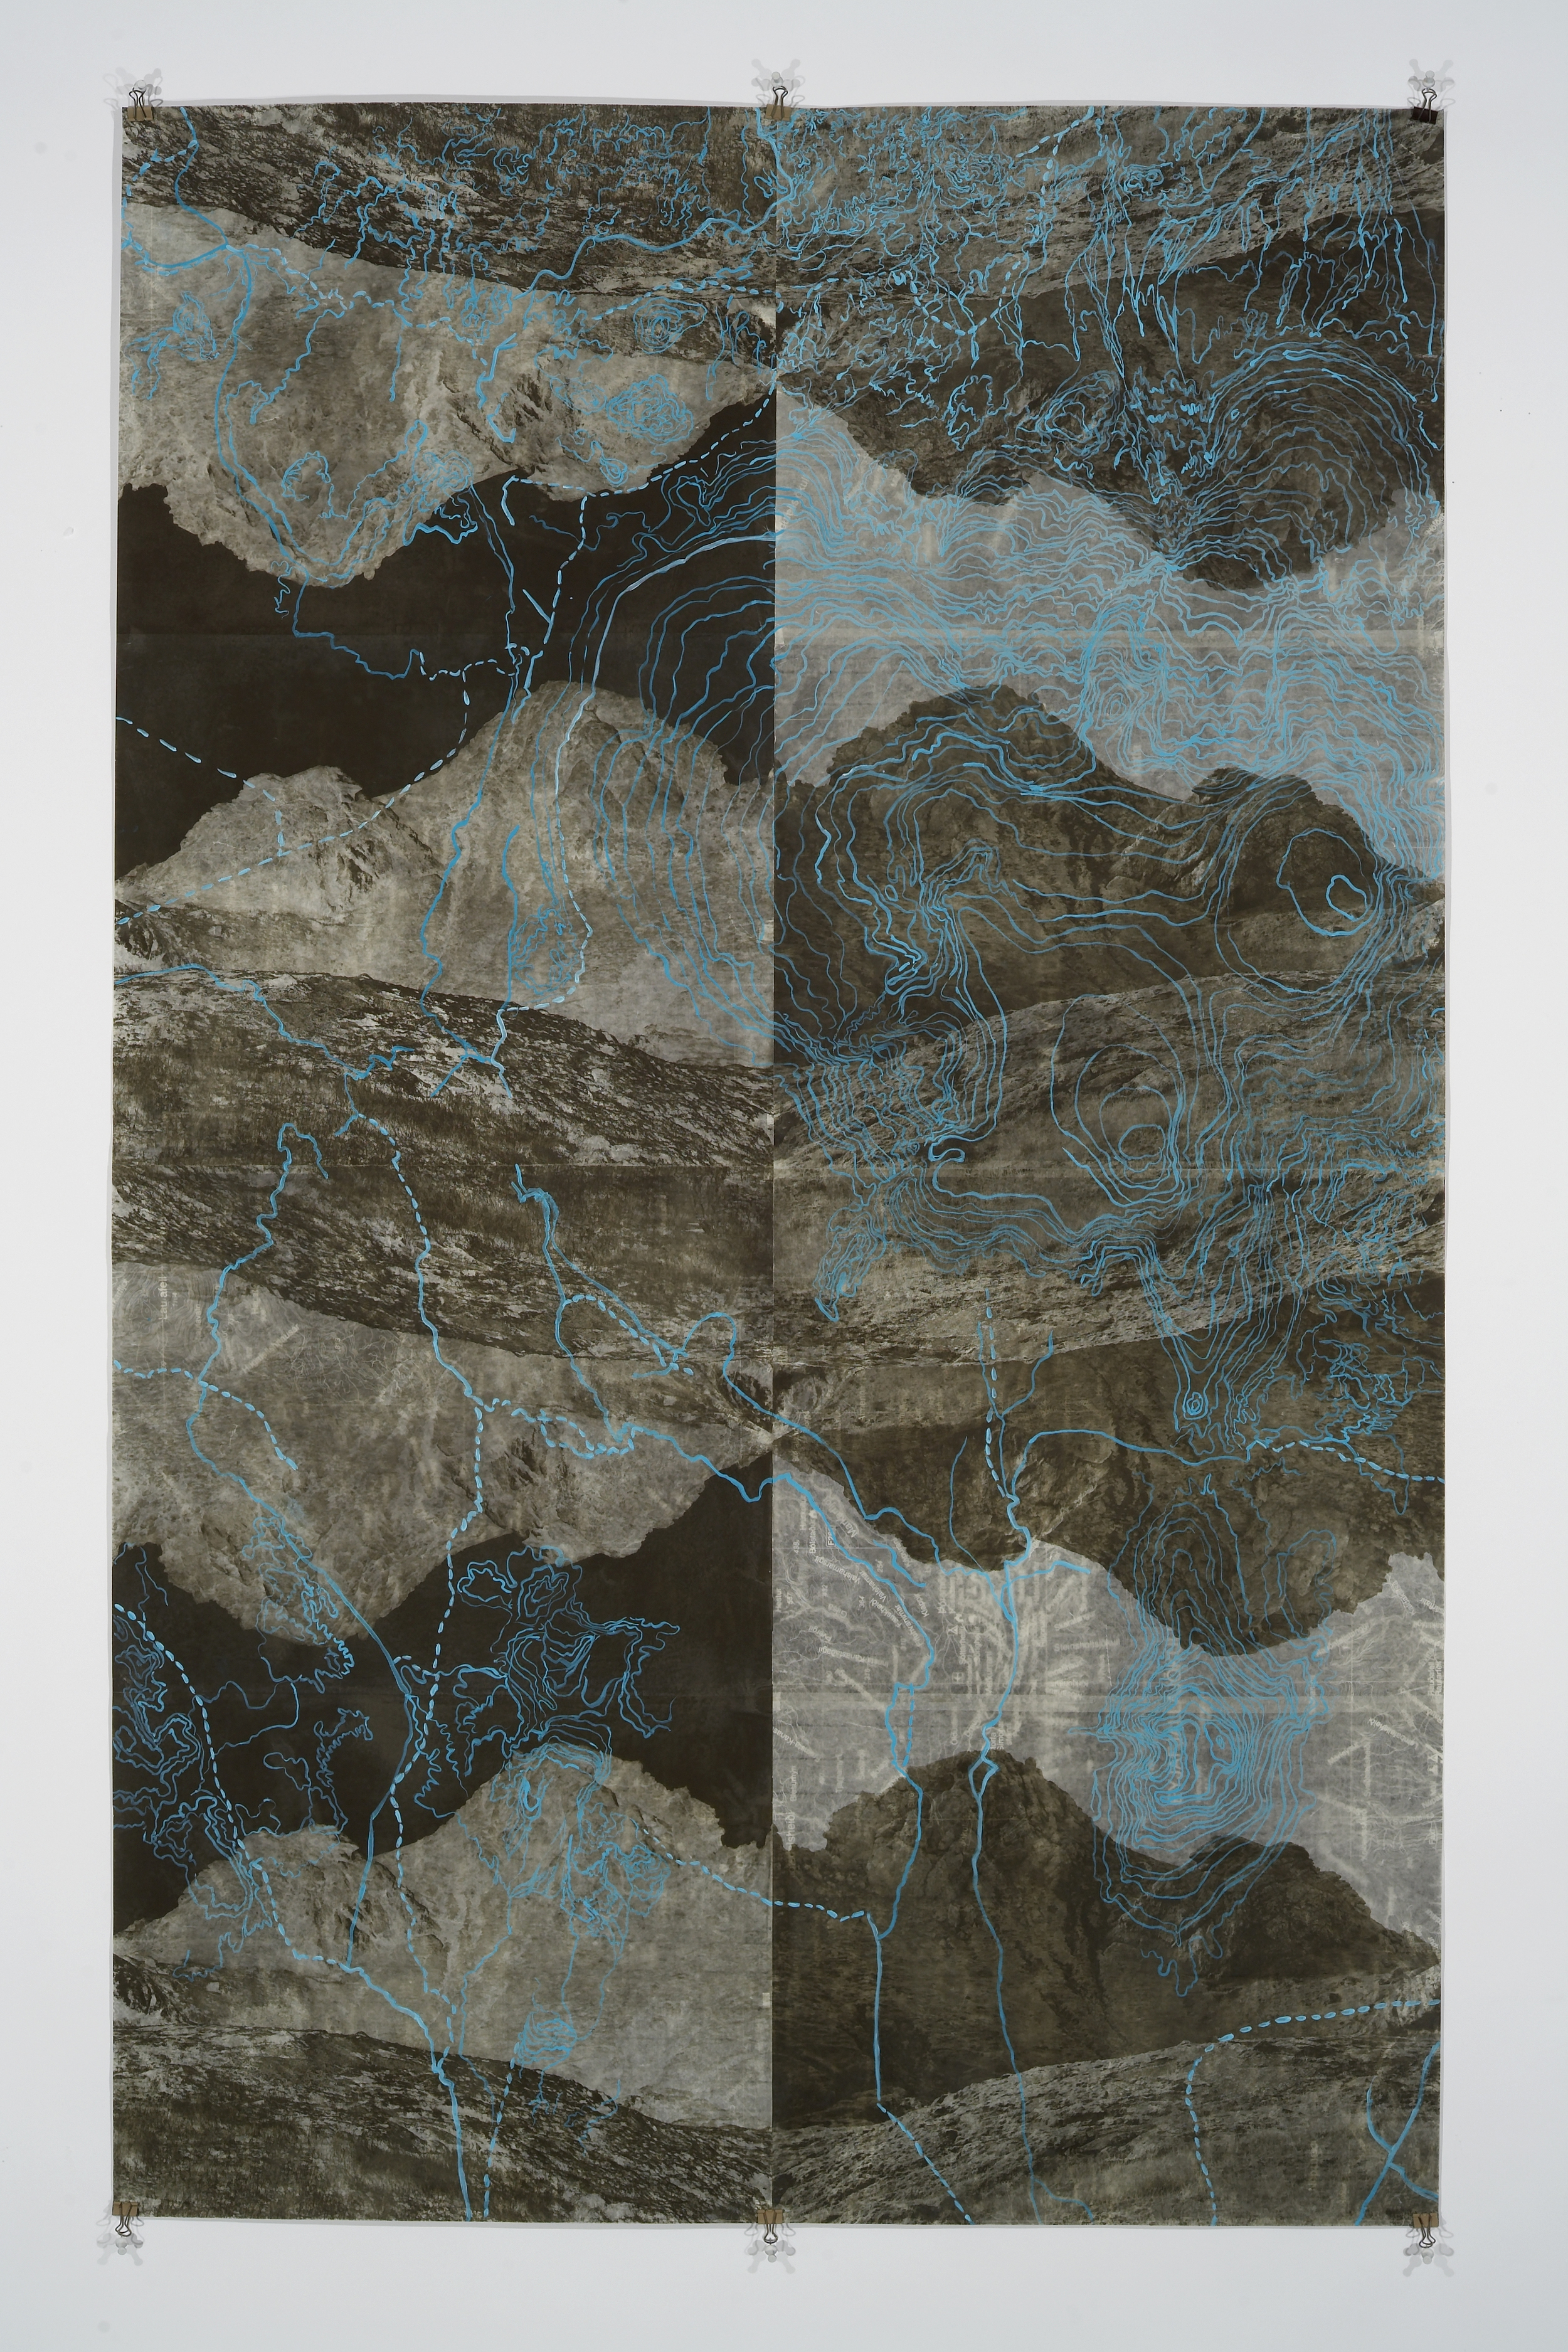    Eyjafjoll Scroll&nbsp;II, &nbsp;2006   Photogravure on kozo shi, digital pigment print, oil paint,&nbsp;wax in layers   65.5” X 41"  